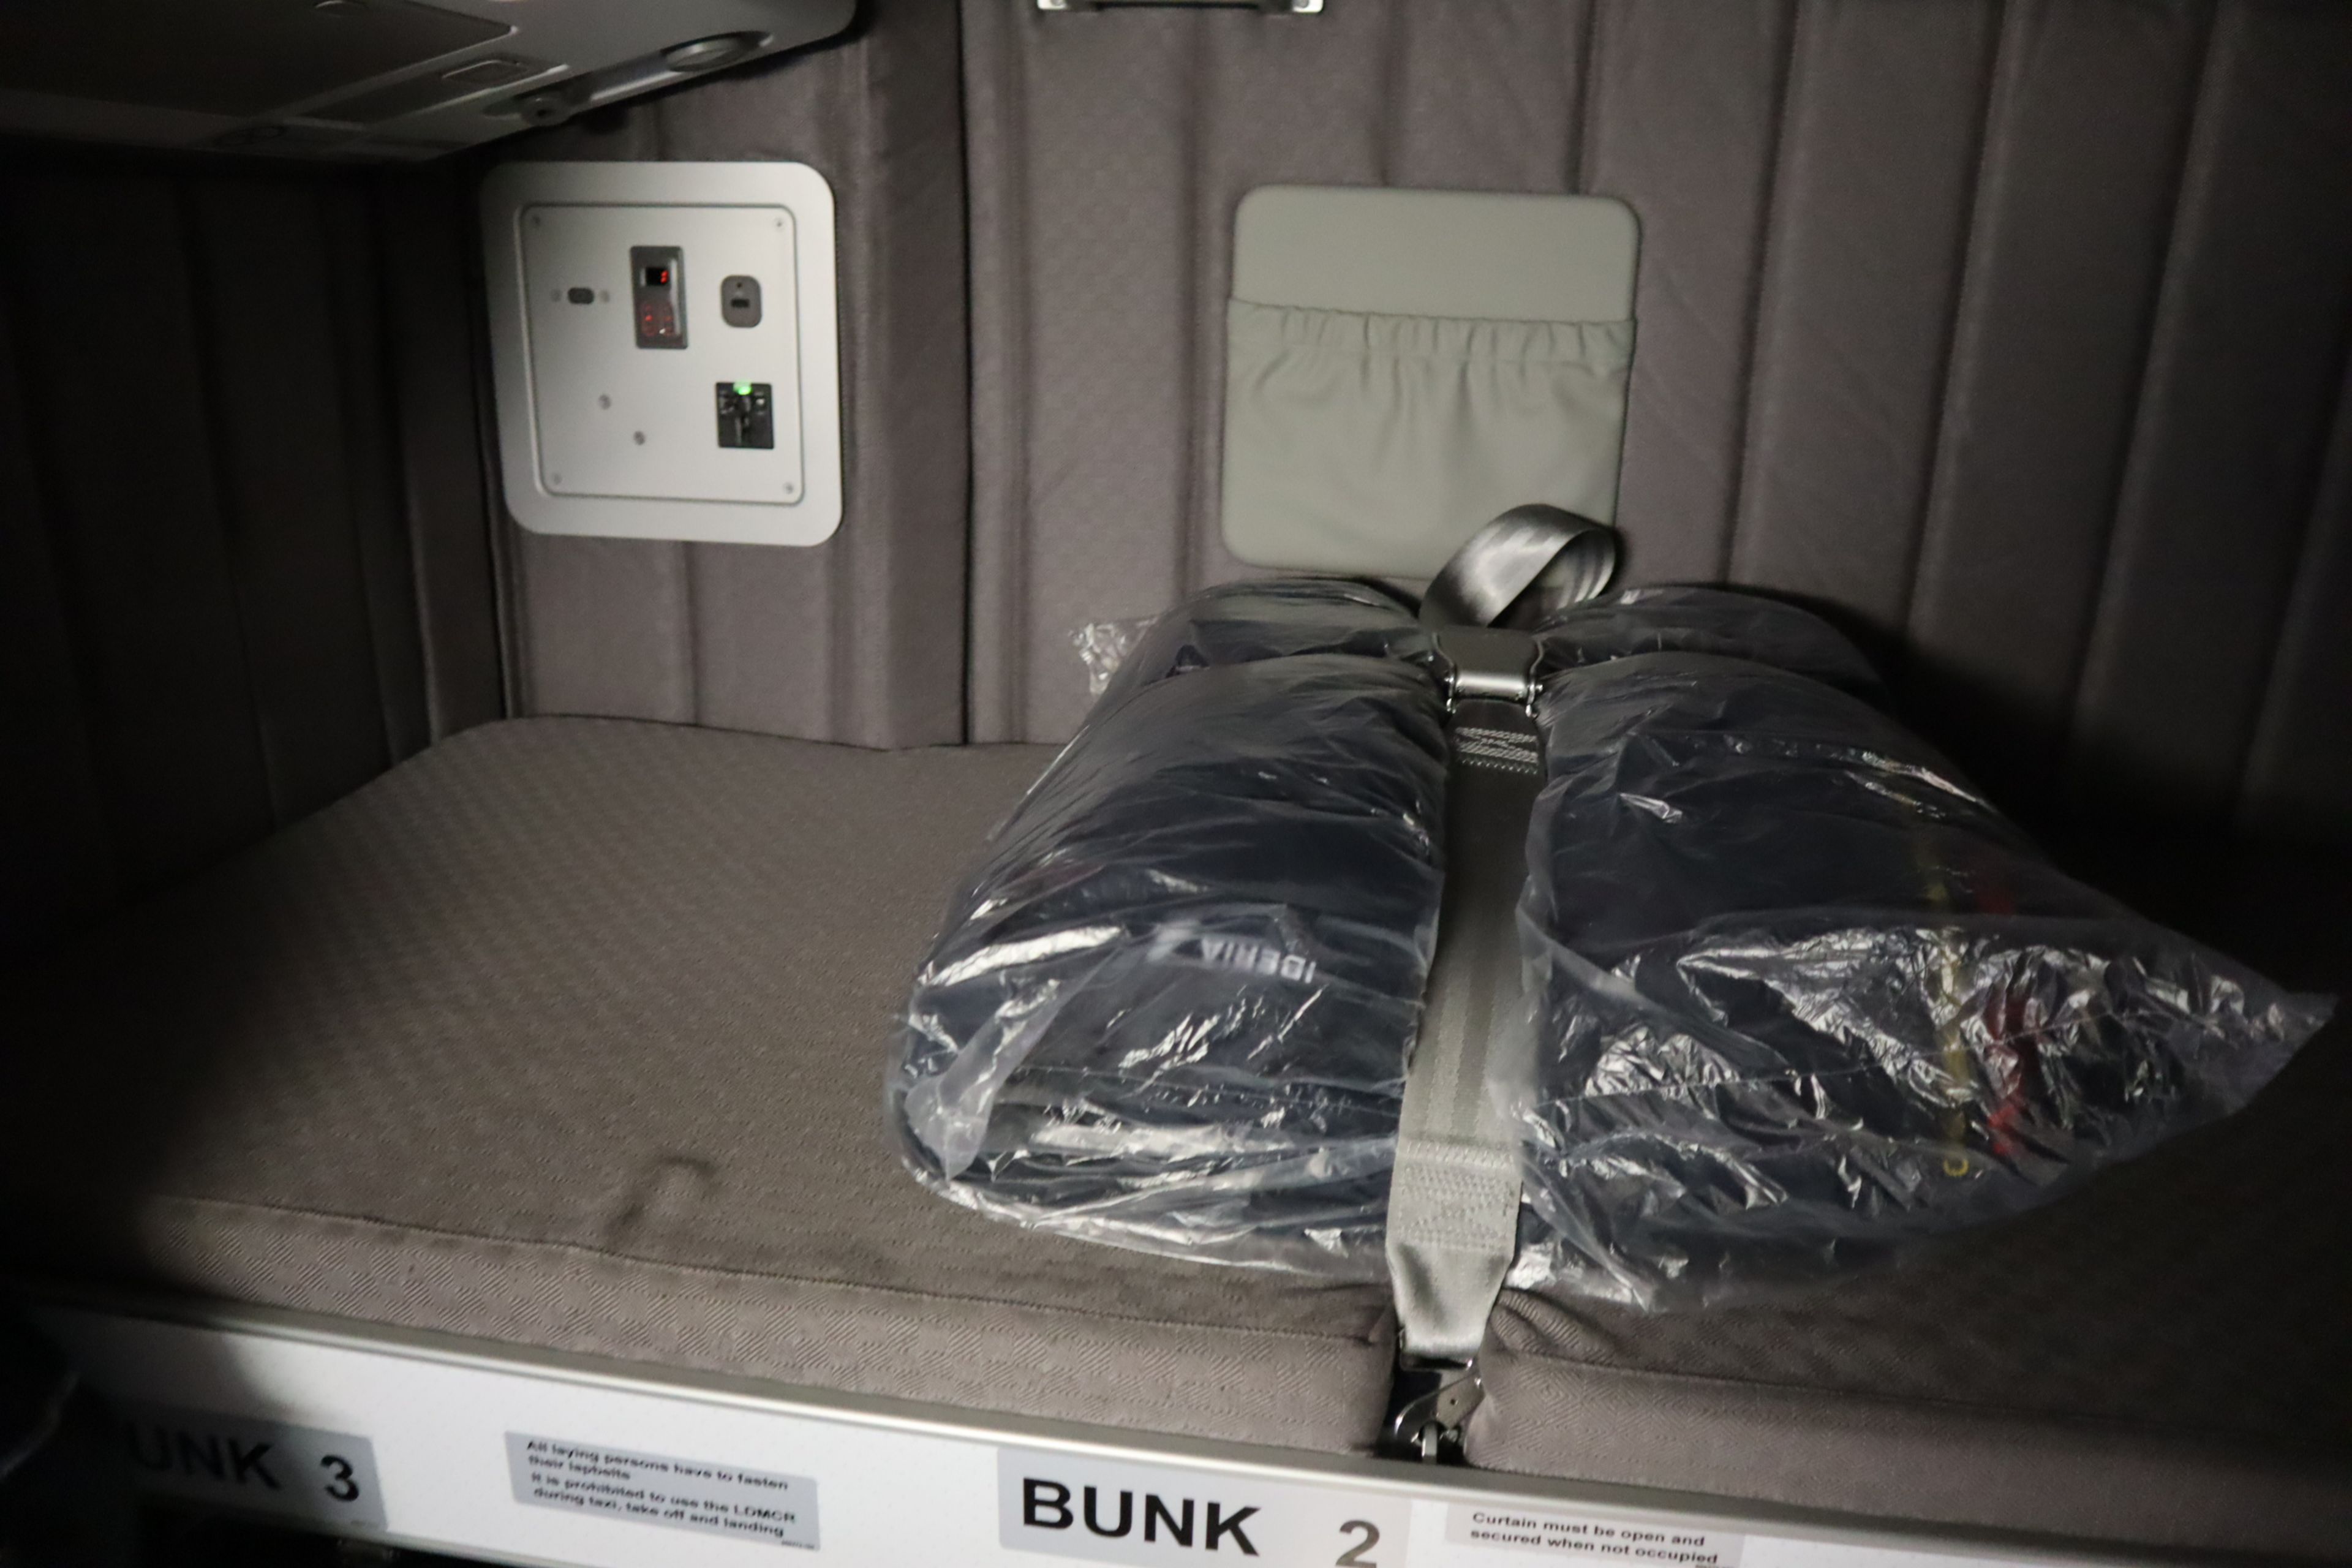 Cama donde descansan las azafatas de vuelo en un avión Airbus A300-200.